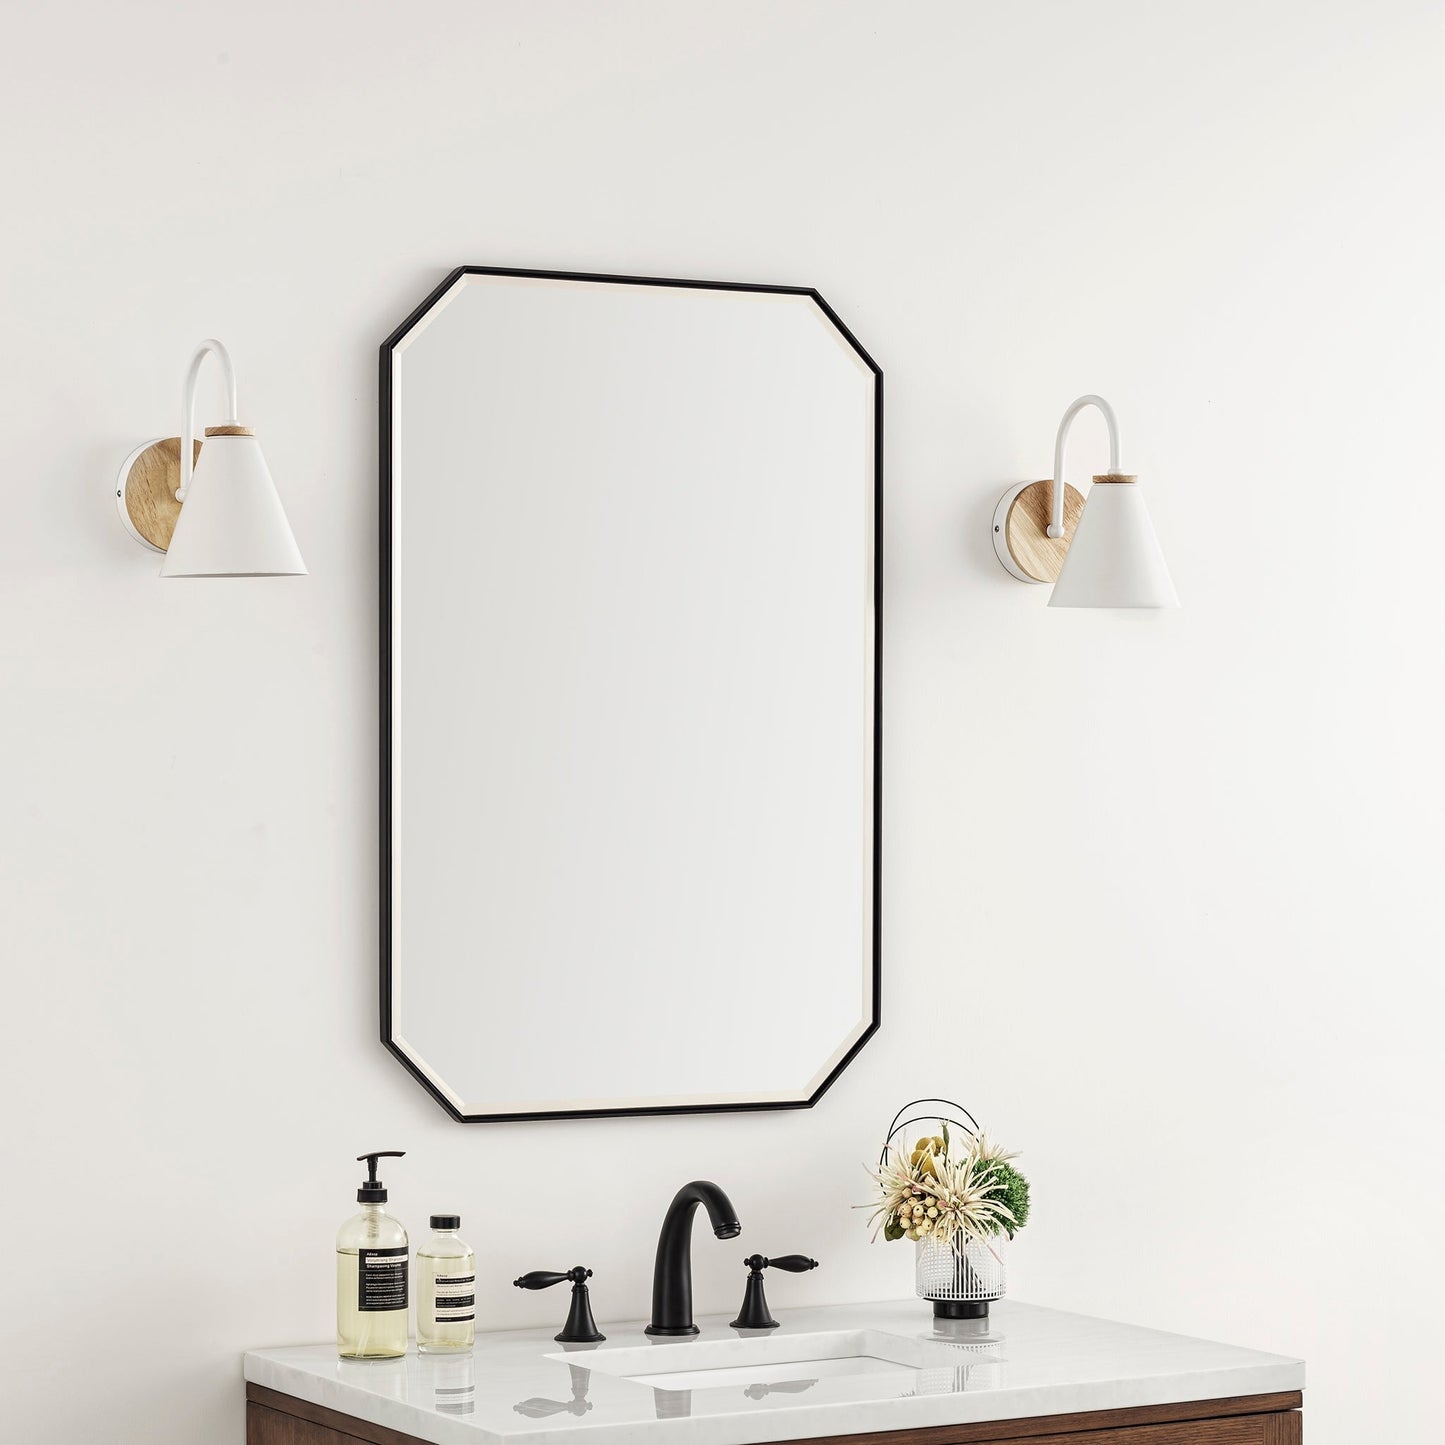 
                  
                    Rohe 24" Octagonal Mirror in Matte Black James Martin Vanities 
                  
                